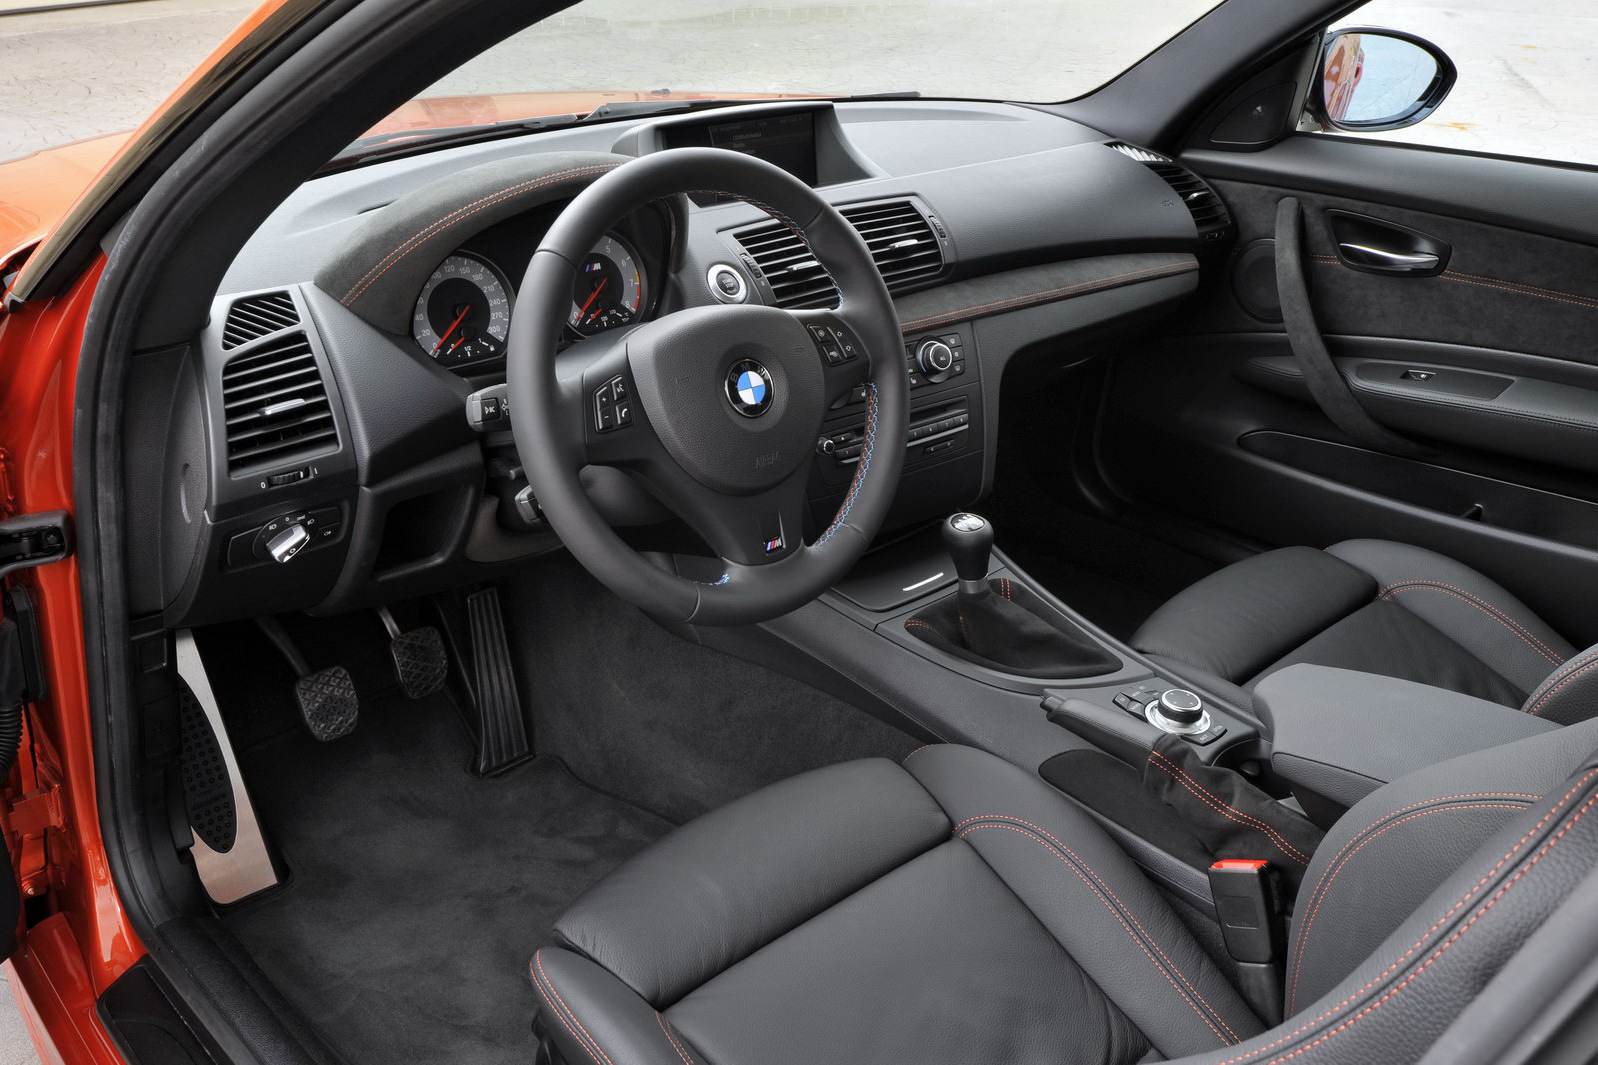 Interiorul lui BMW Seria 1 M Coupe nu este foarte diferit, avand unele tuse sportive